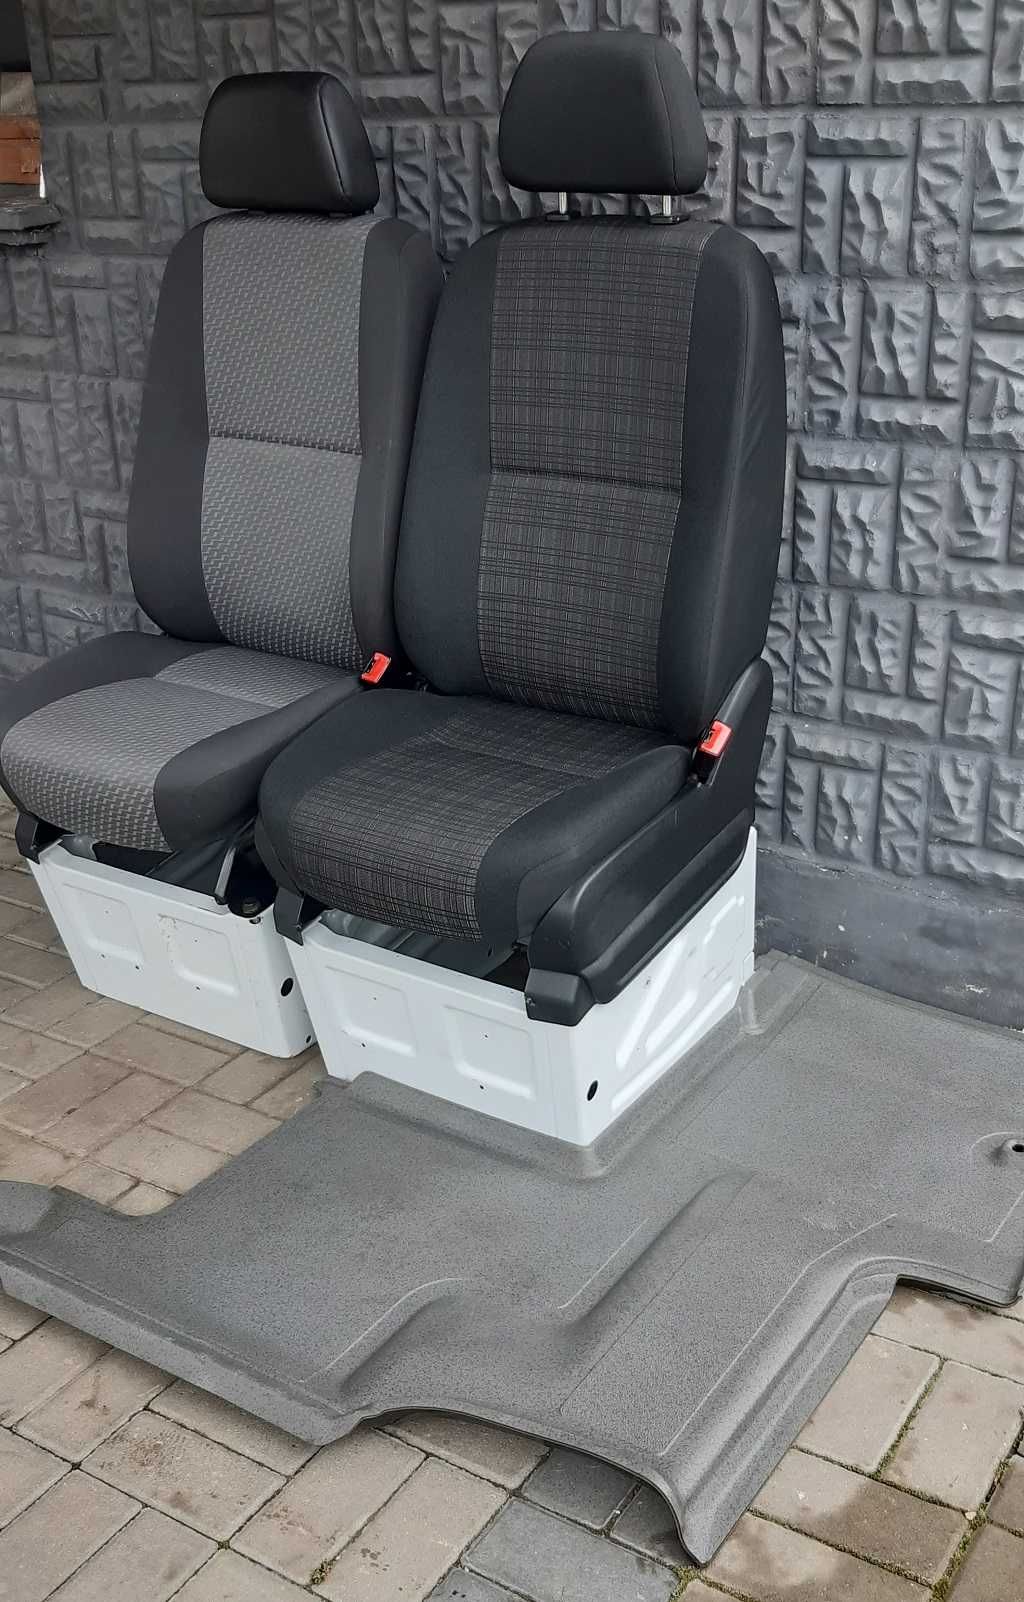 Fotel/Siedzenie pasażera Mercedes Sprinter 906, Vw Crafter